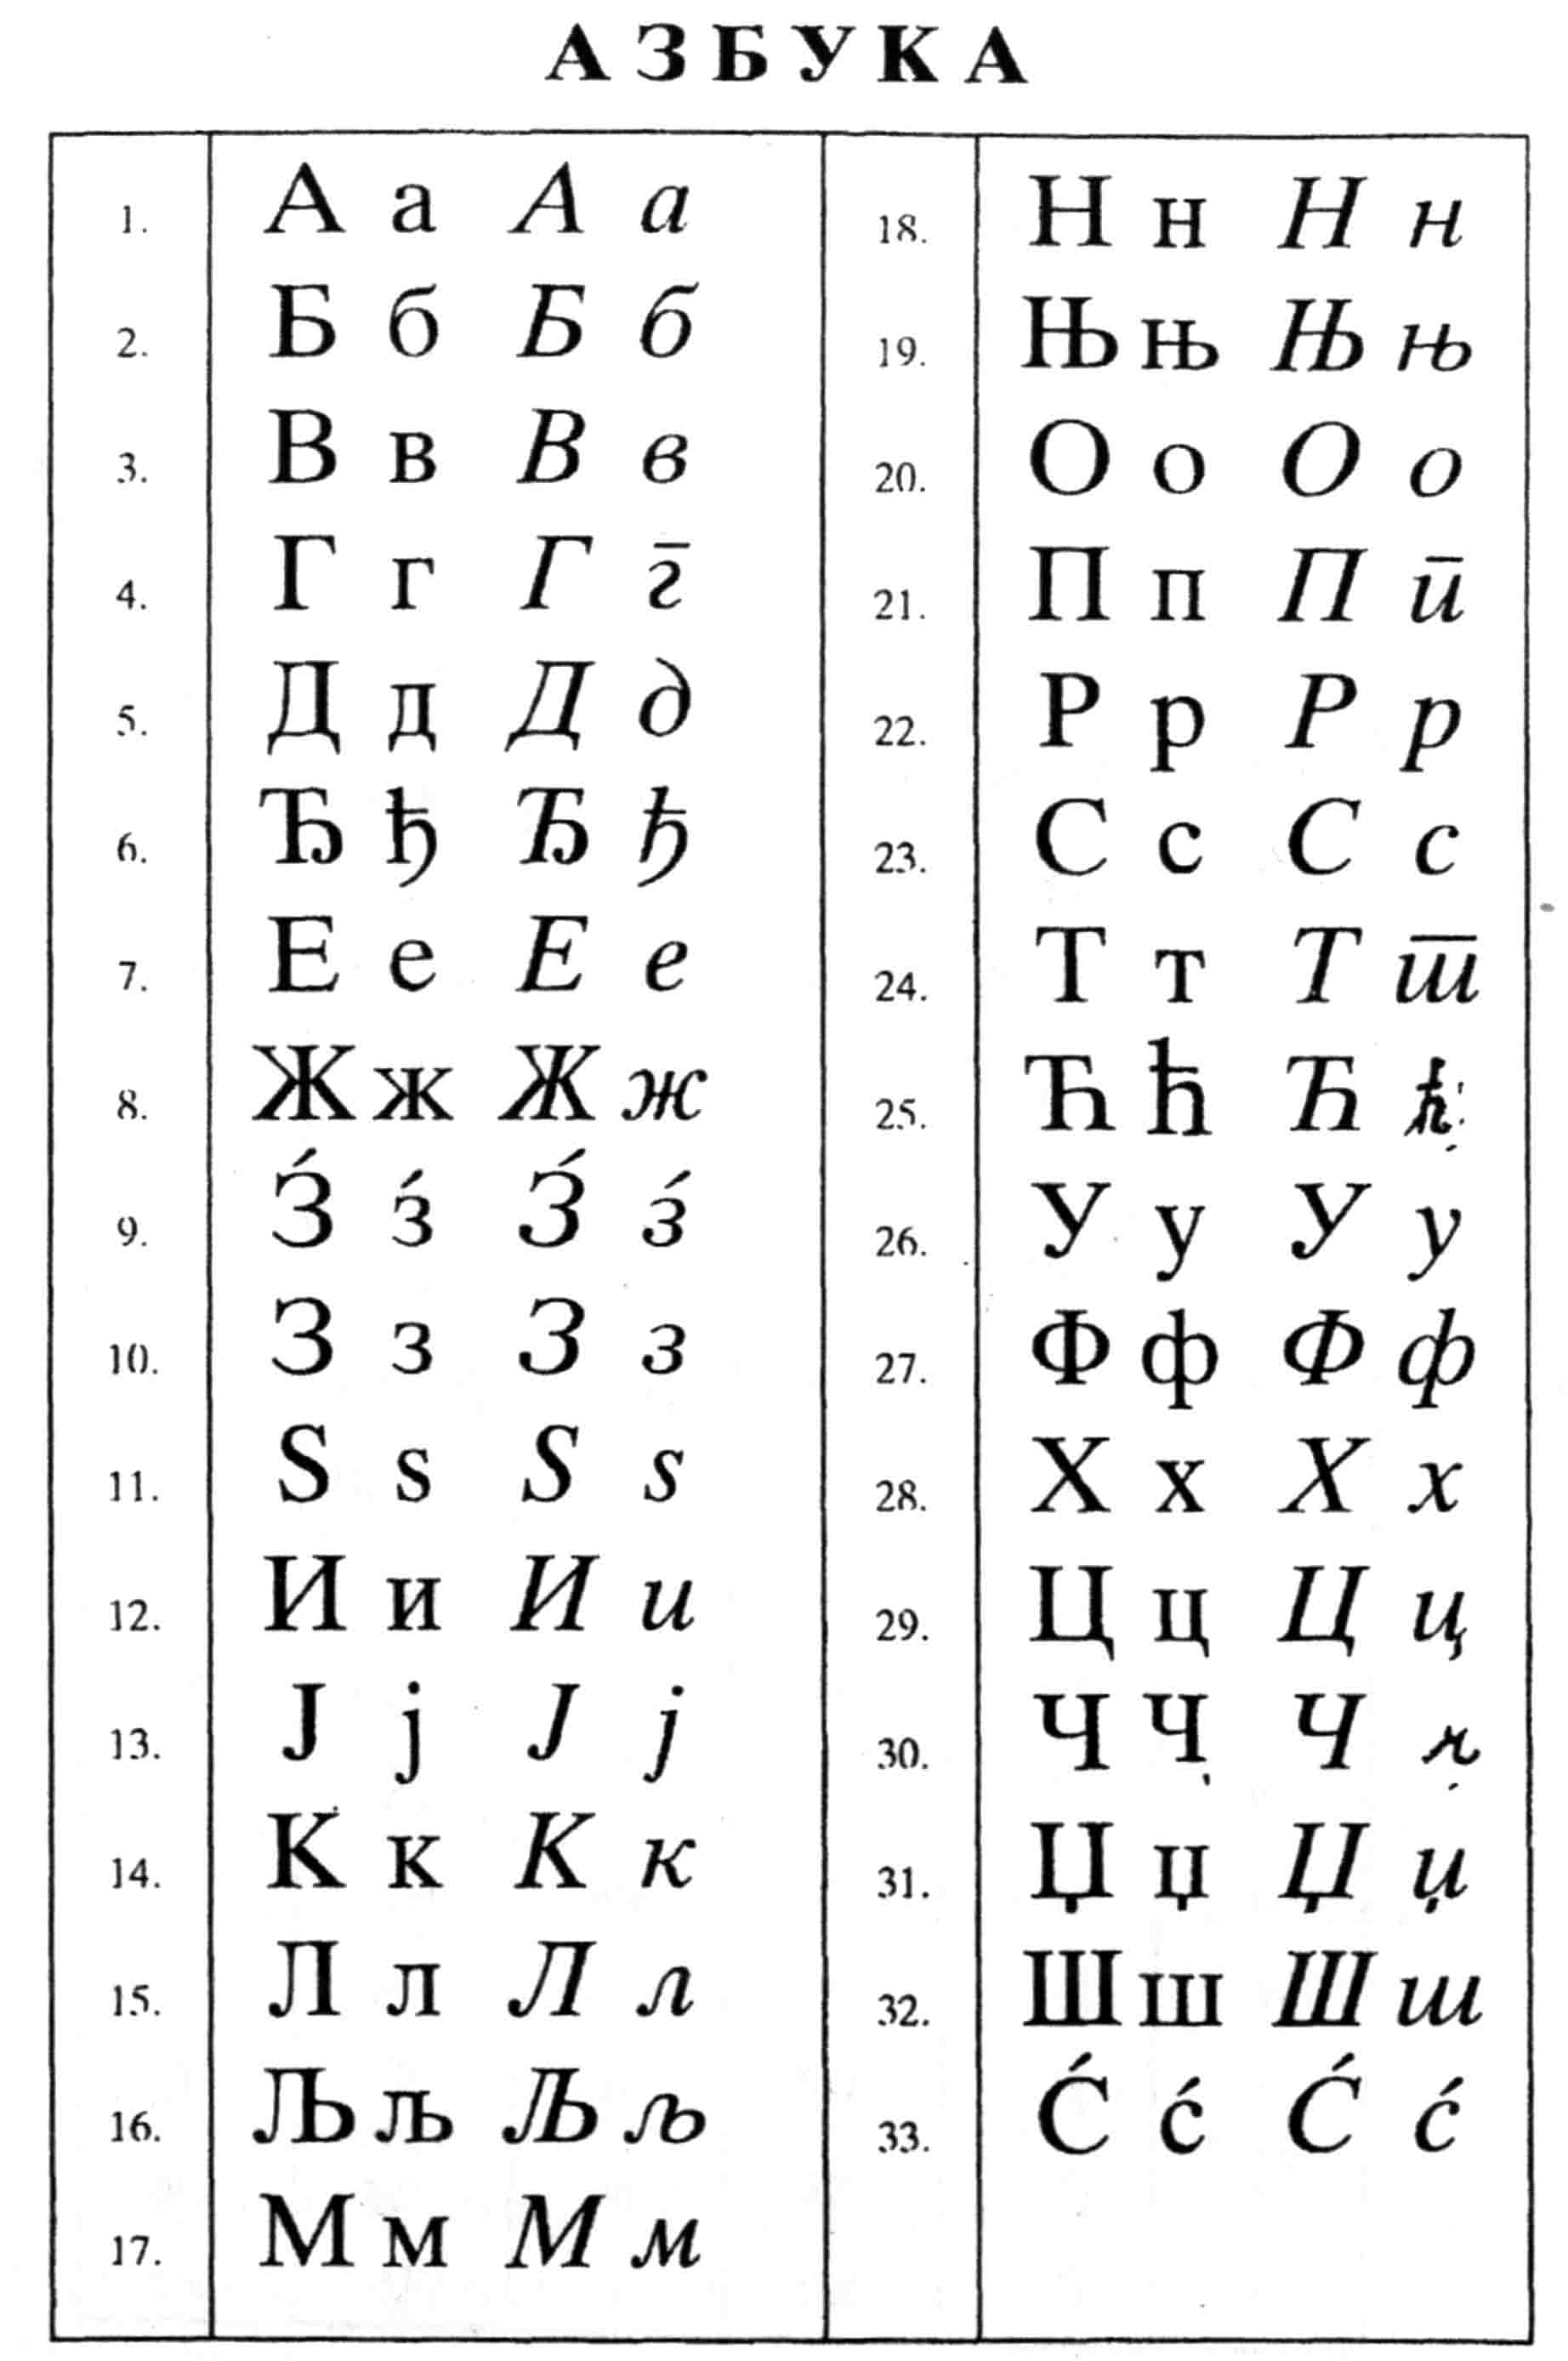 srpska abeceda latinica